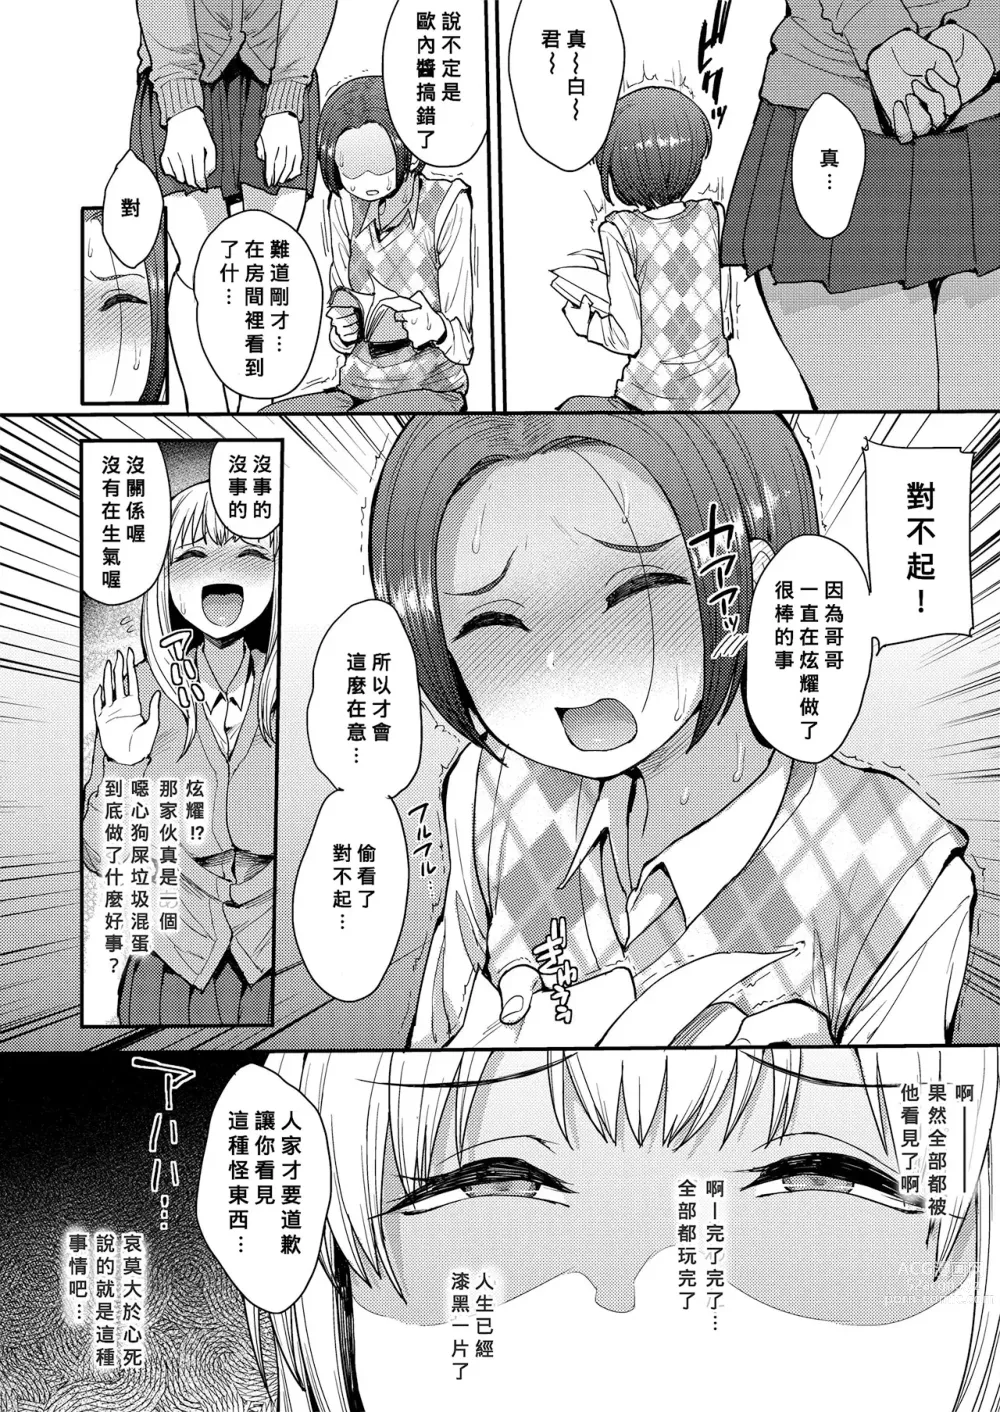 Page 6 of manga こっちむいてよ